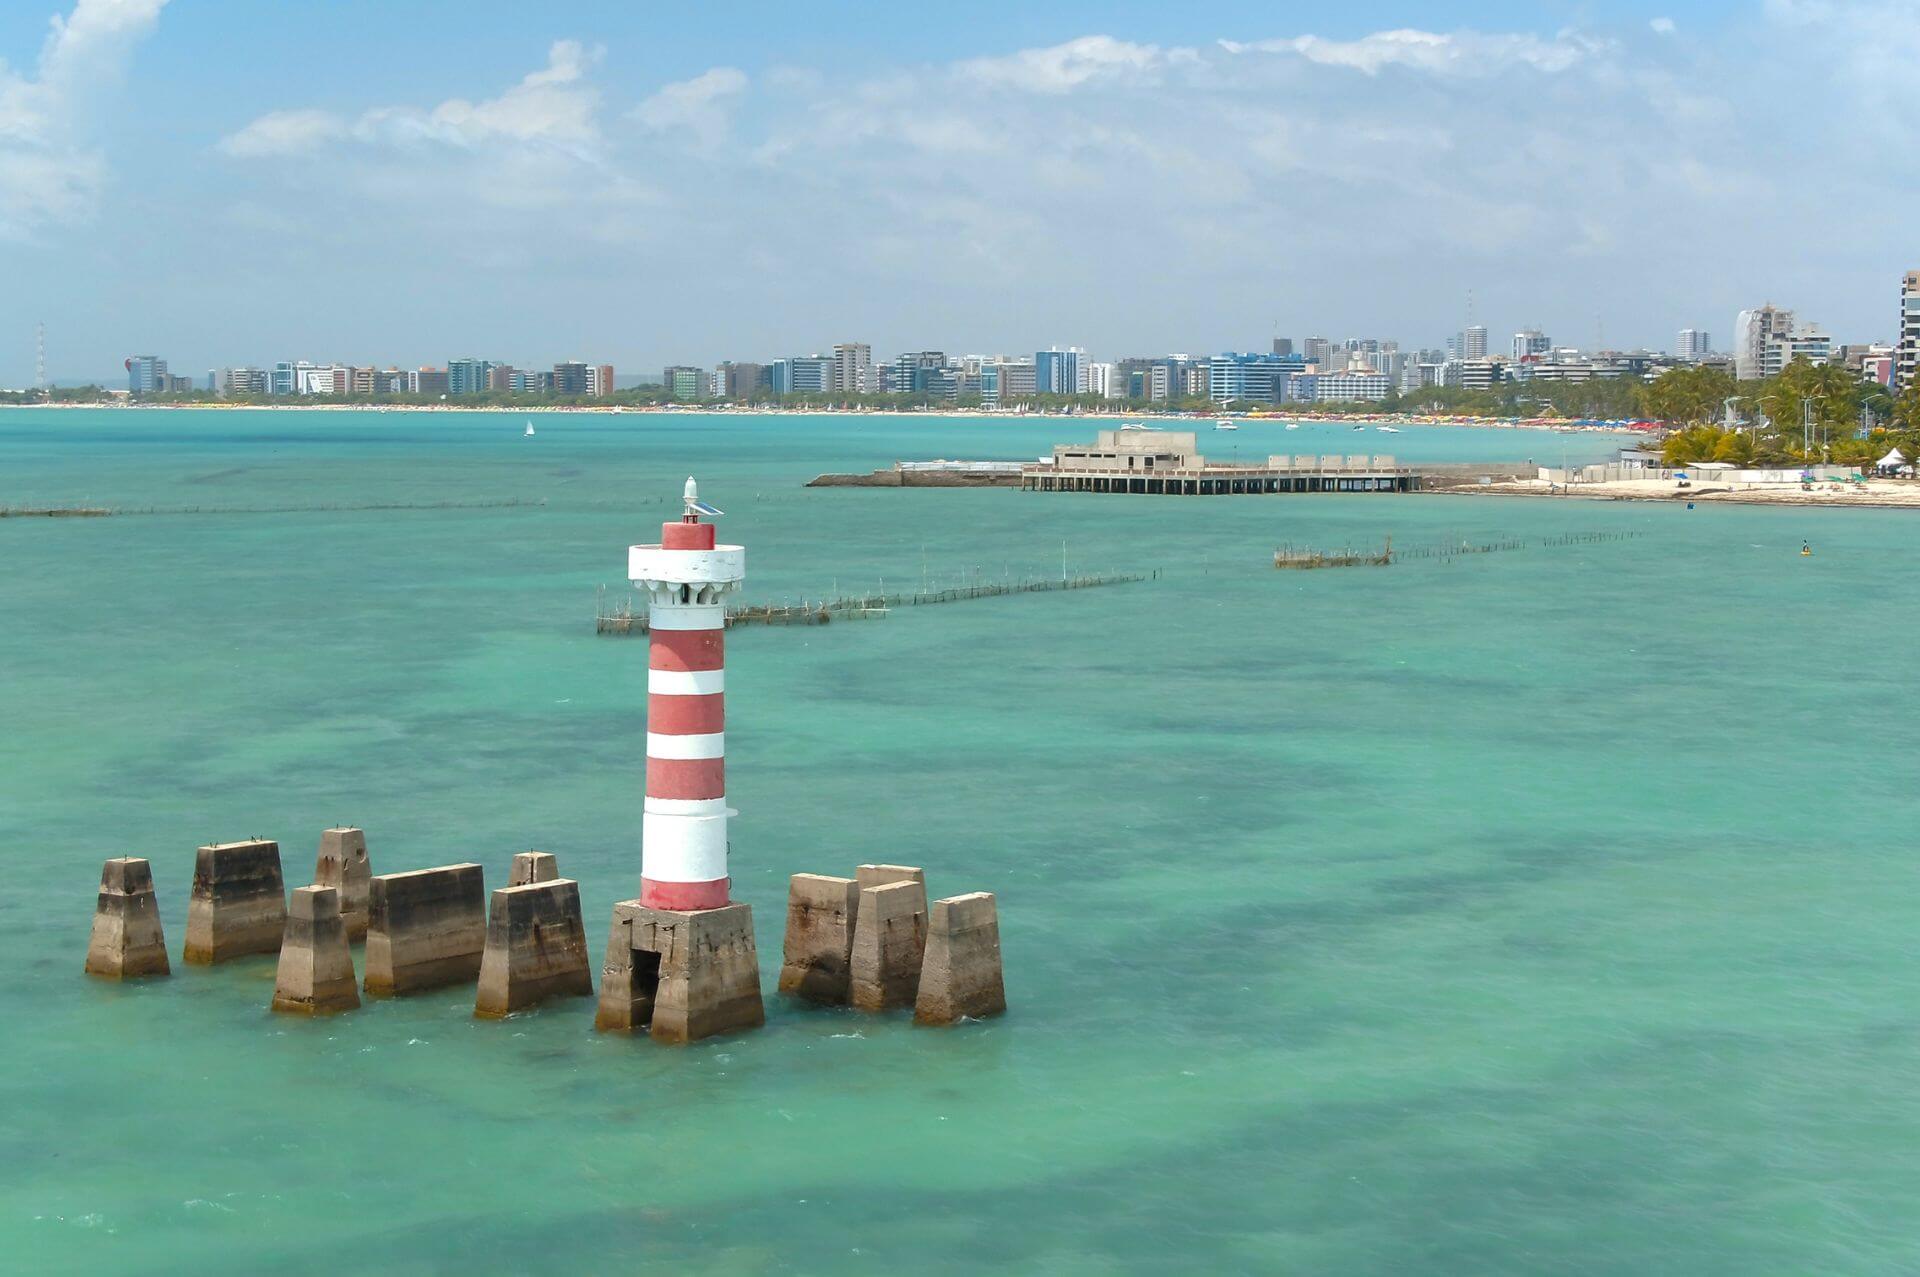 Mergulhe pelas águas cristalinas das lindas cidades de Alagoas e viva uma experiência tropical em cenários paradisíacos que combinam cultura, história e tradições locais que vão te impressionar.